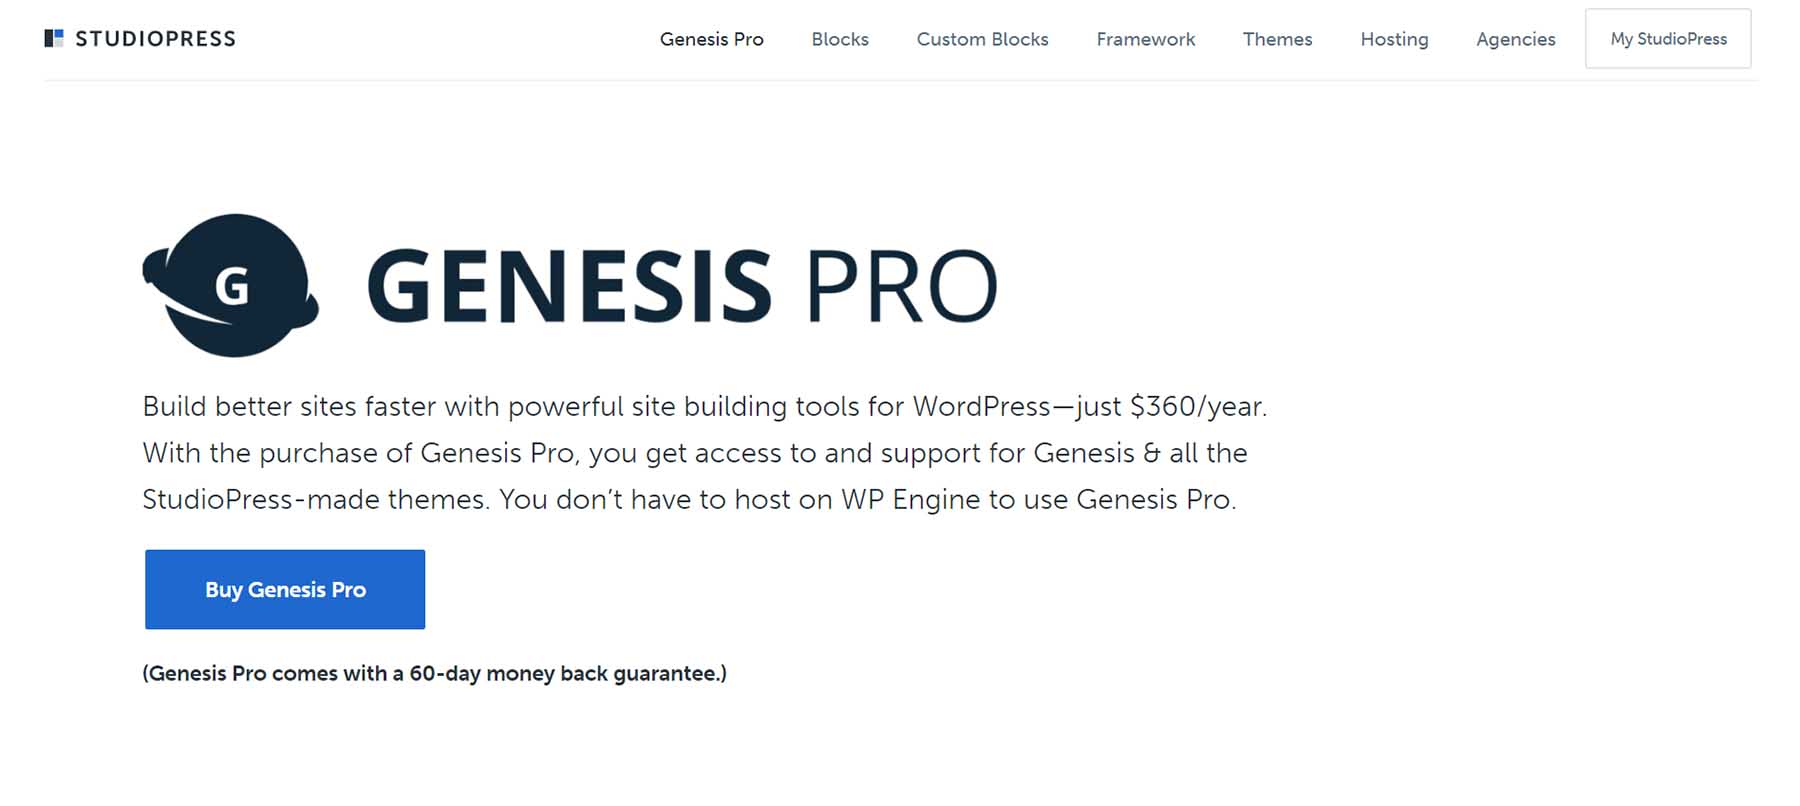 Genesis Pro by StudioPress